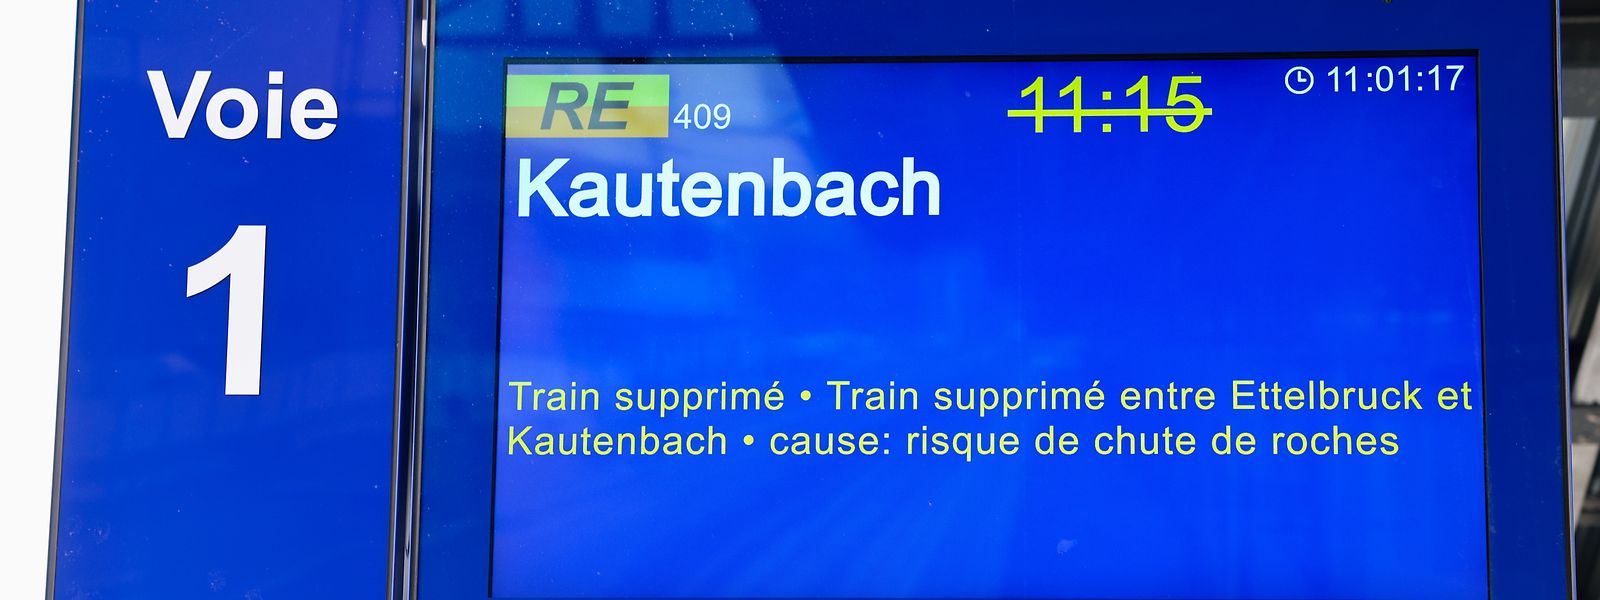 Zwischen Ettelbrück und Kautenbach sowie Kautenbach und Wiltz wird in den nächsten Wochen kein Zug fahren.